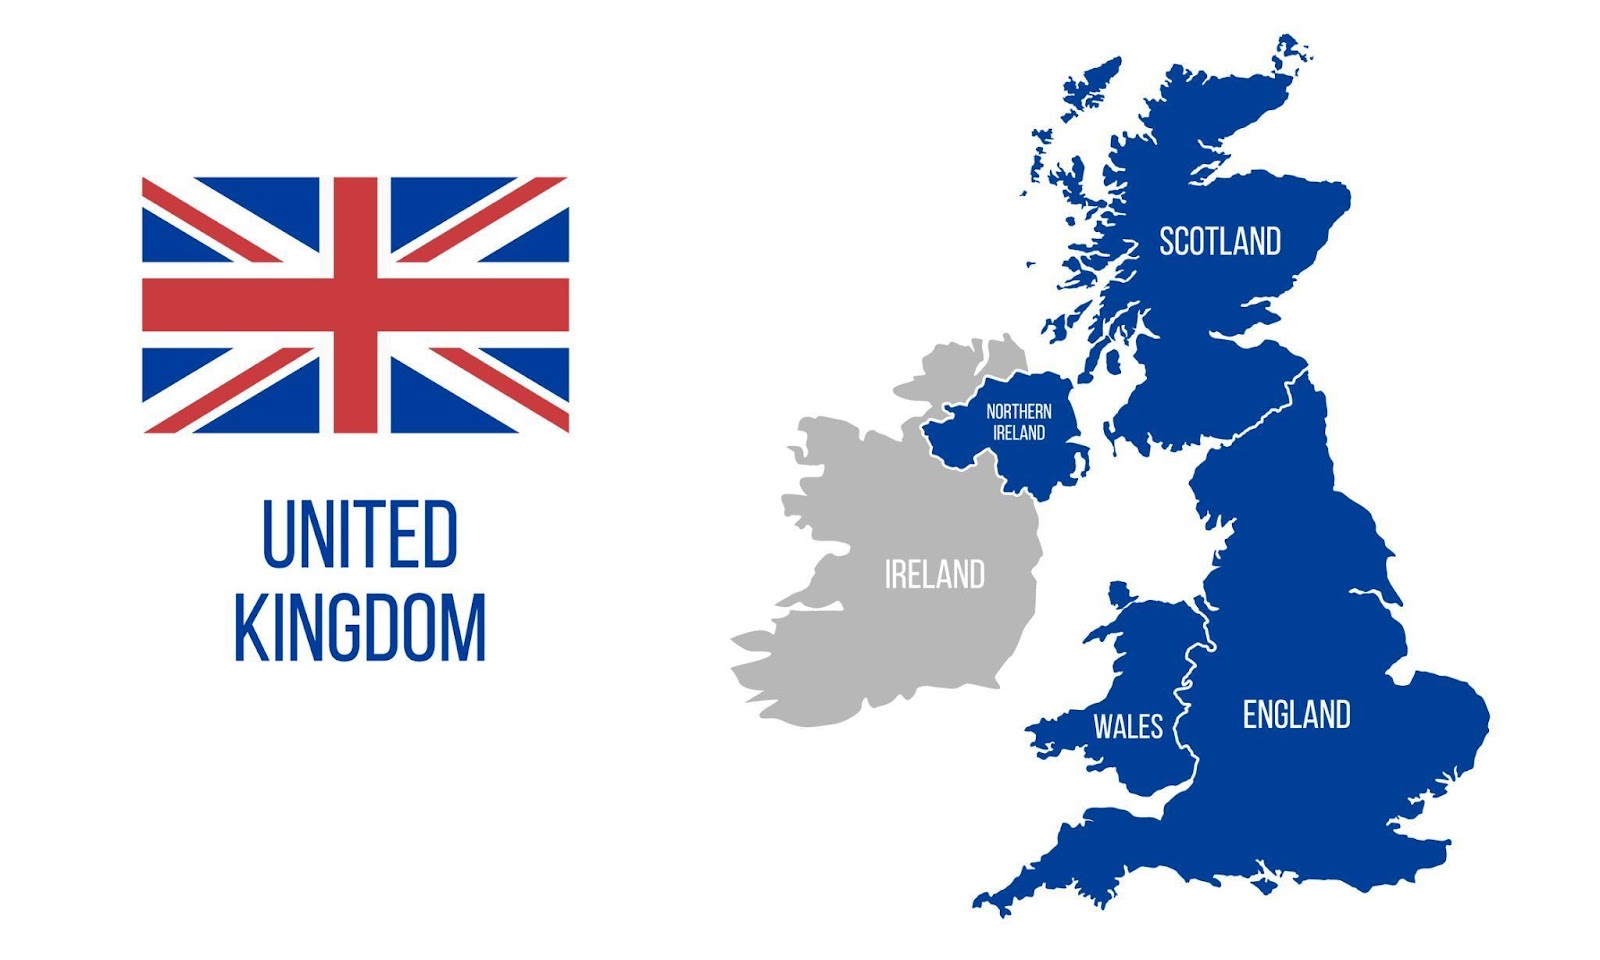 Tenga en cuenta que el Reino Unido (UK) y Gran Bretaña, aunque muy similares, no son sinónimos en este contexto legislativo